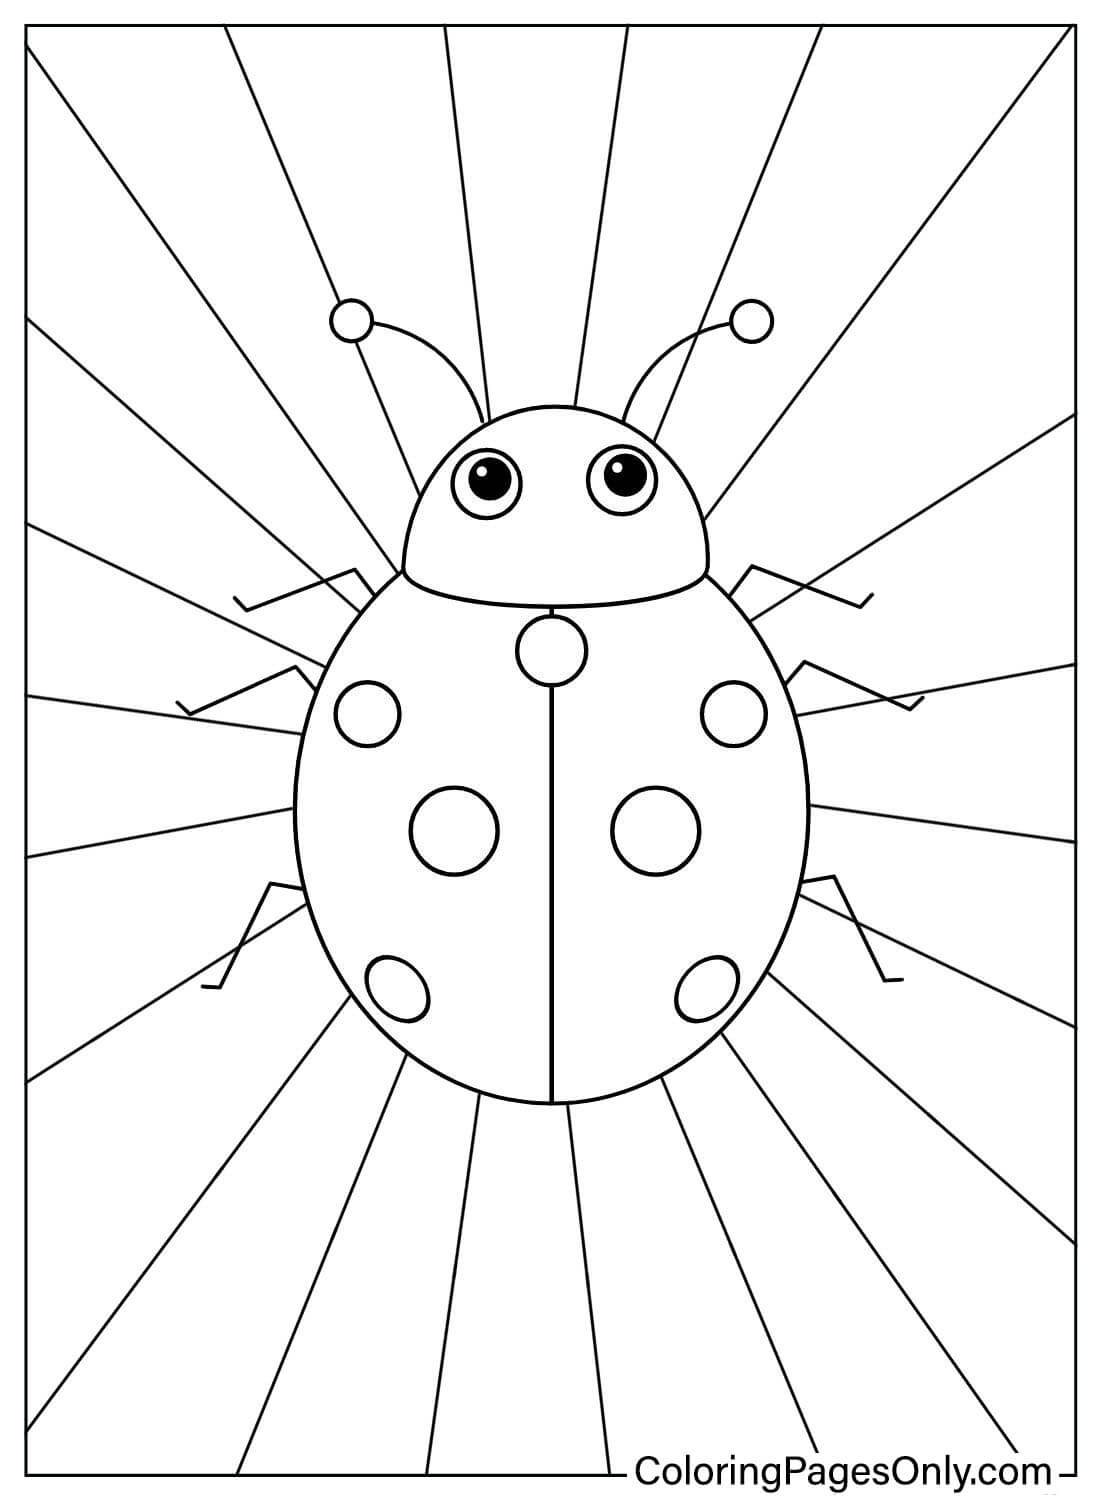 Página para colorear fácil de Ladybug de Ladybug